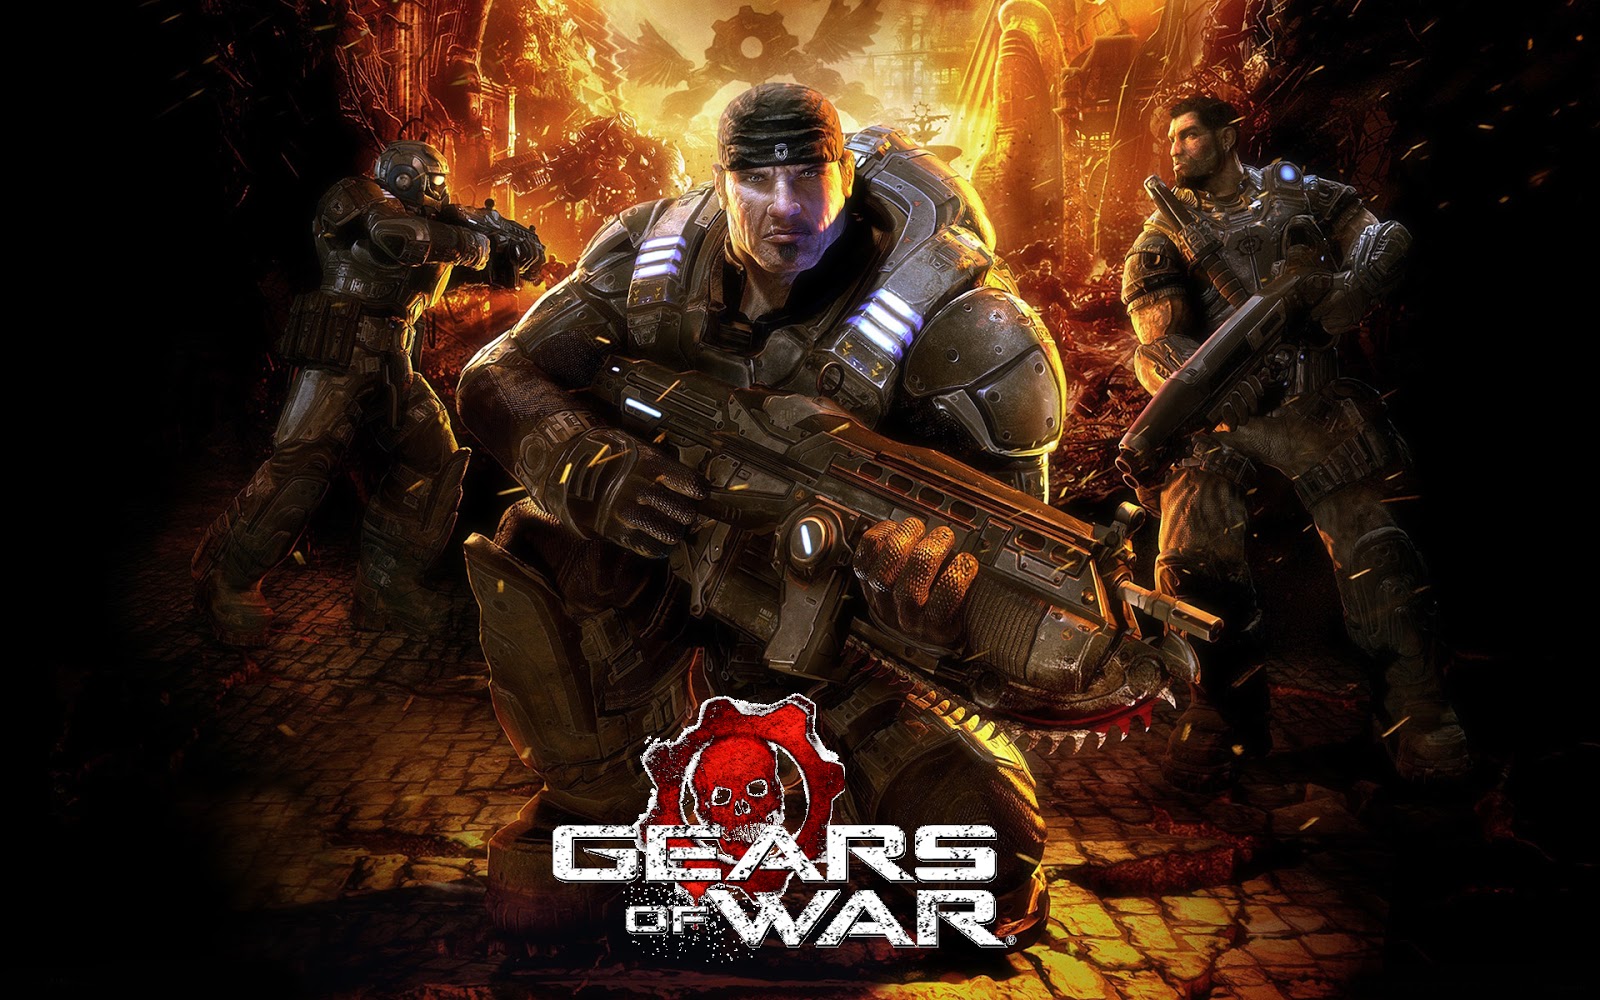 Le créateur de Gears of War estime que la série a besoin d'un reboot à la God of War